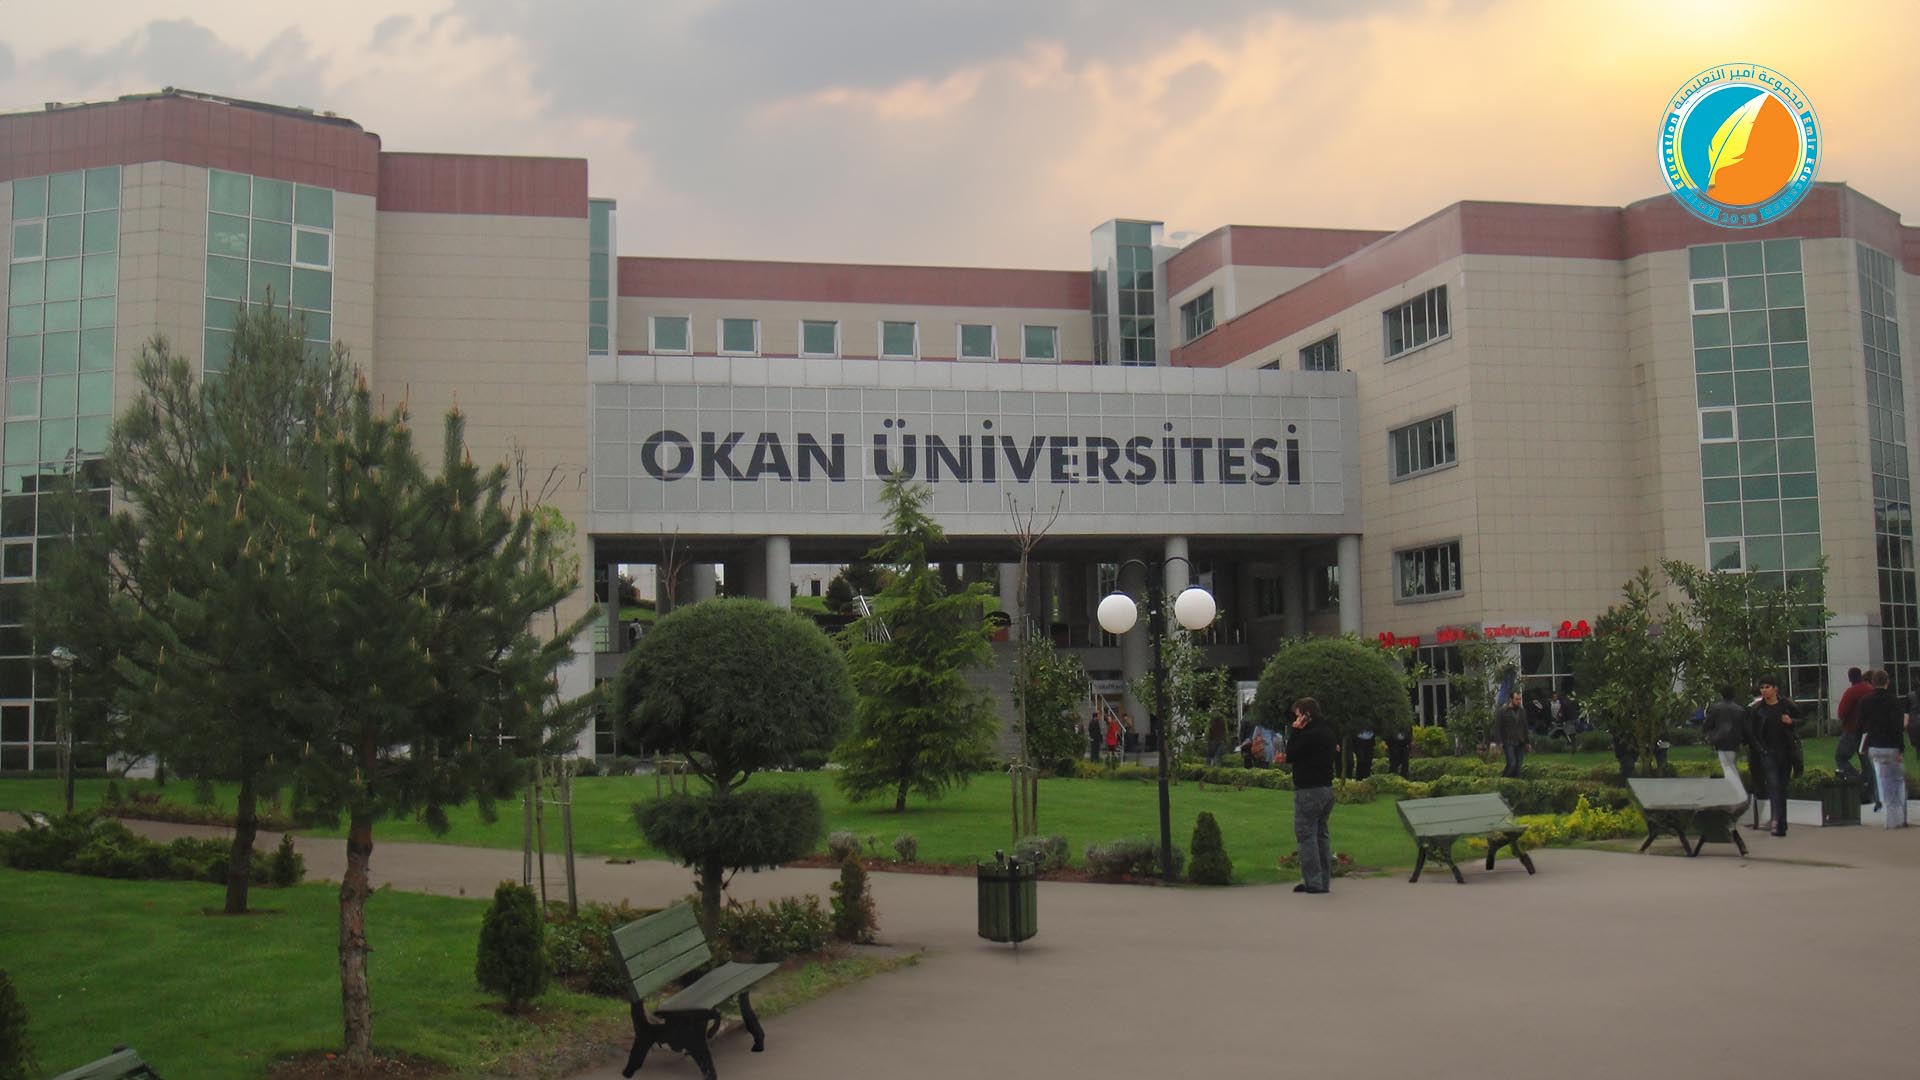 الدراسة في جامعة أوكان في اسطنبول